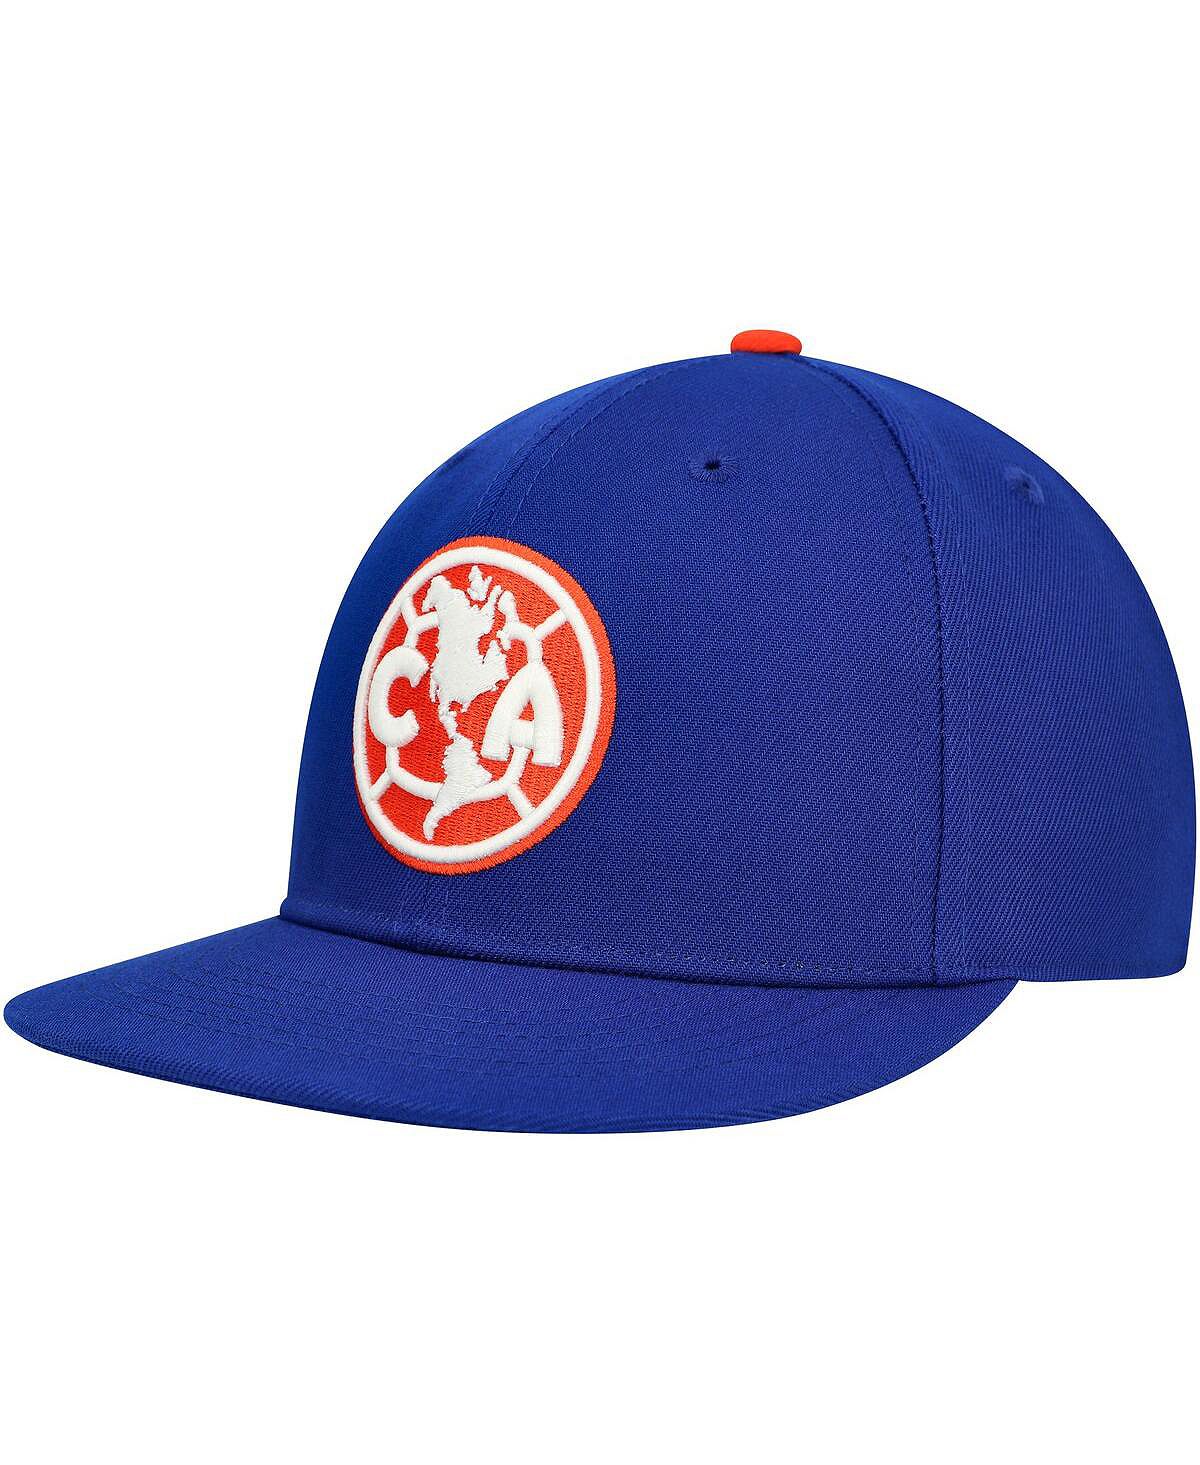 футболка меч dog s fan electric blue Мужская синяя кепка Club America America's Game Snapback Fan Ink